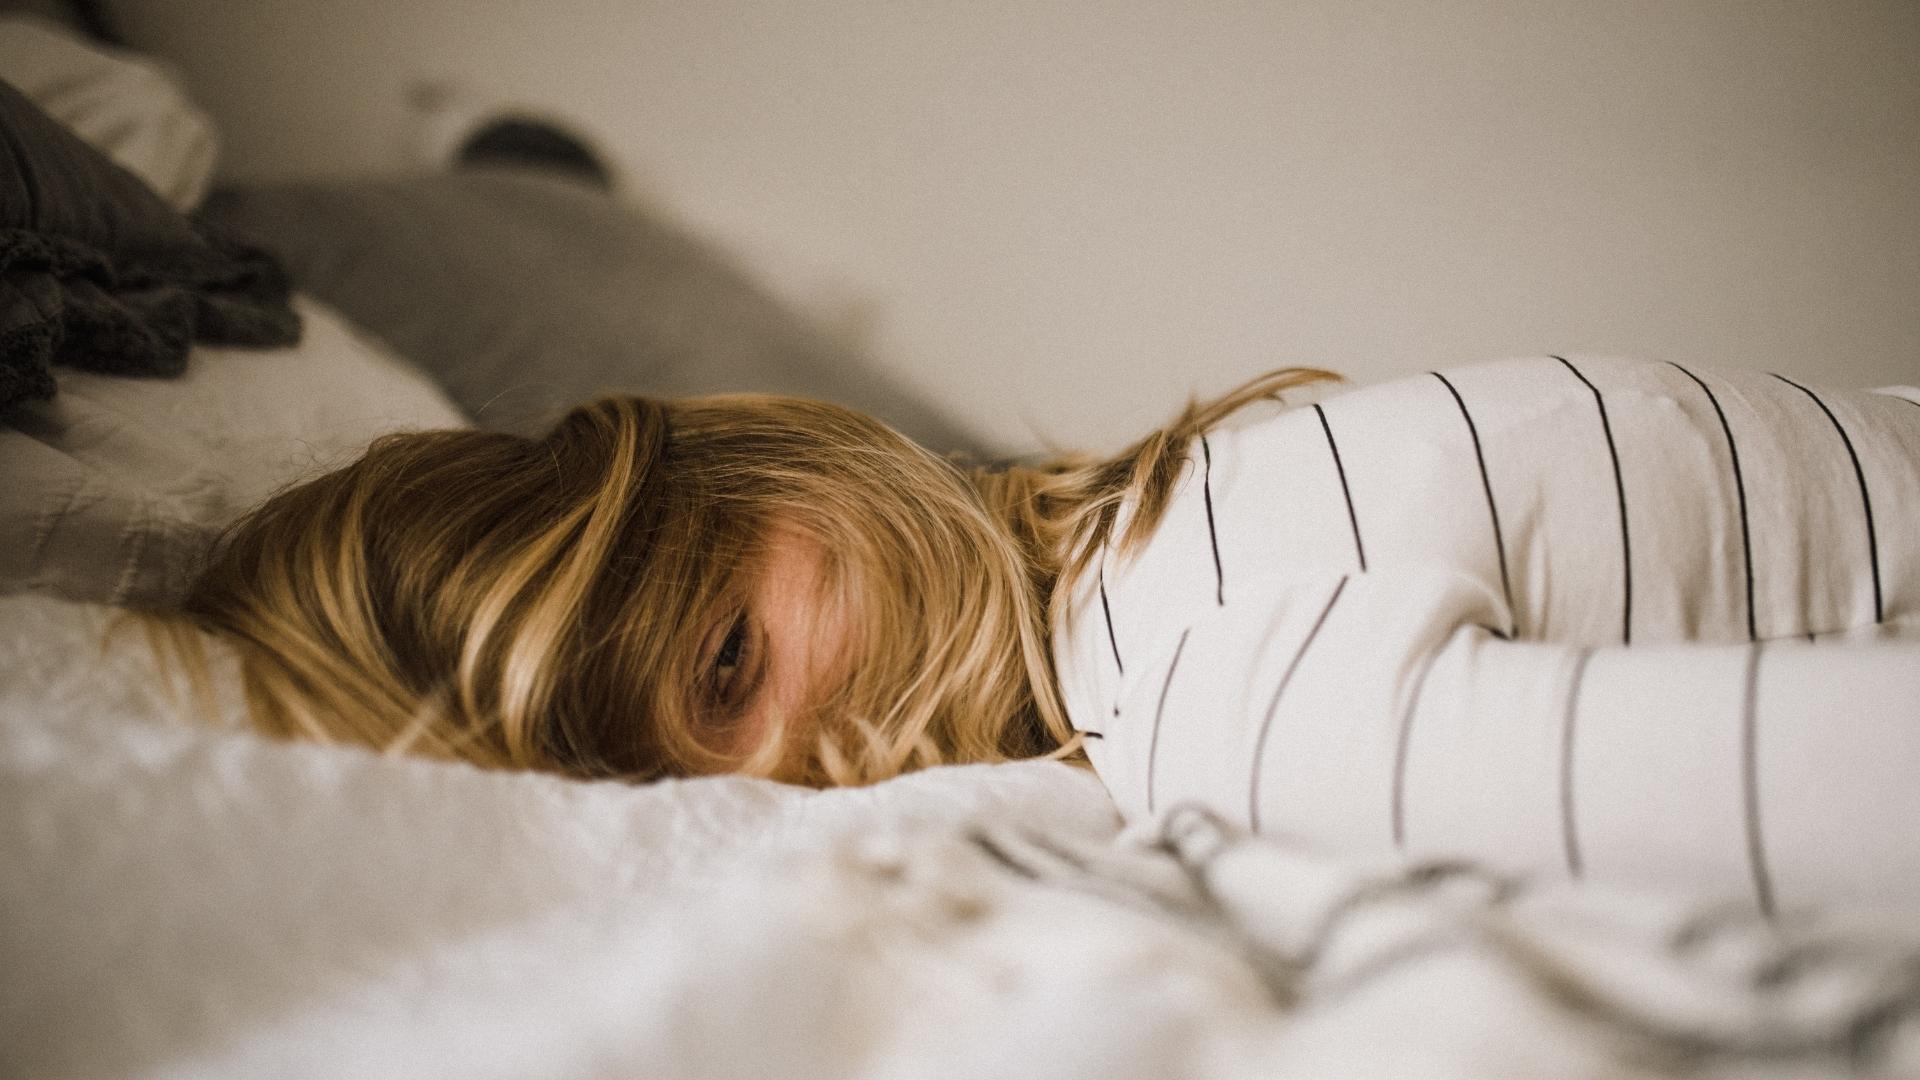 Les règles feraient perdre 5 mois de sommeil, chiffre cette étude glaçante sur la periodsomnia